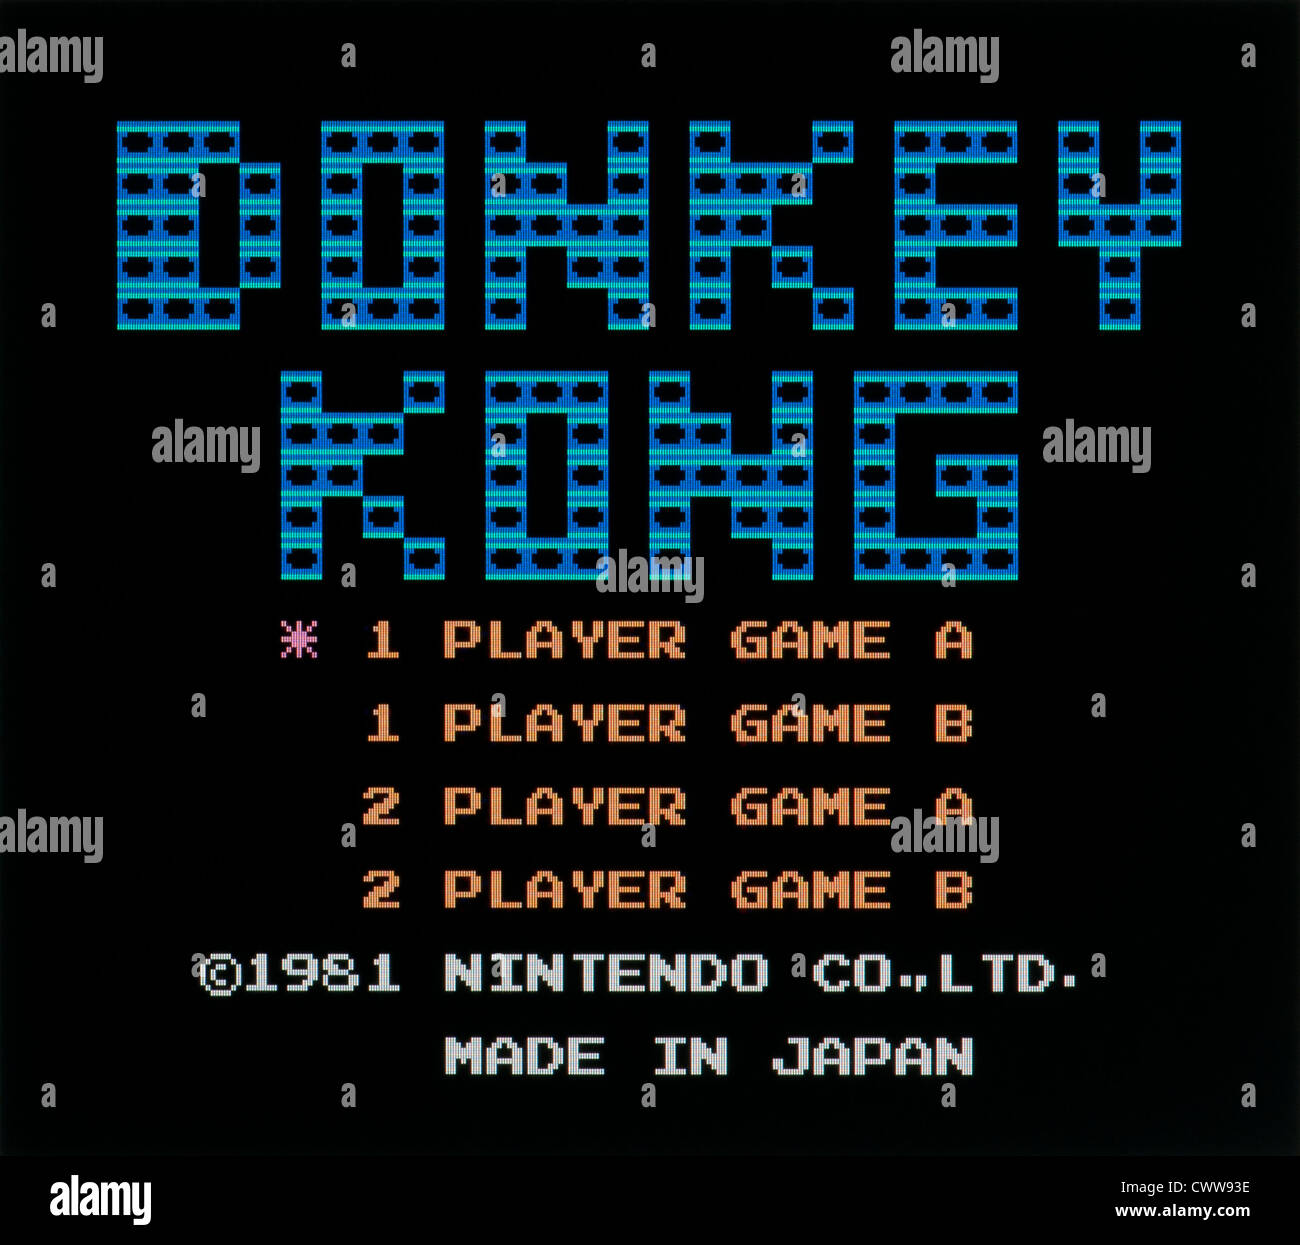 Esel Kong Title Bildschirm, Arcade-Videospiel veröffentlicht am 1981 Stockfoto